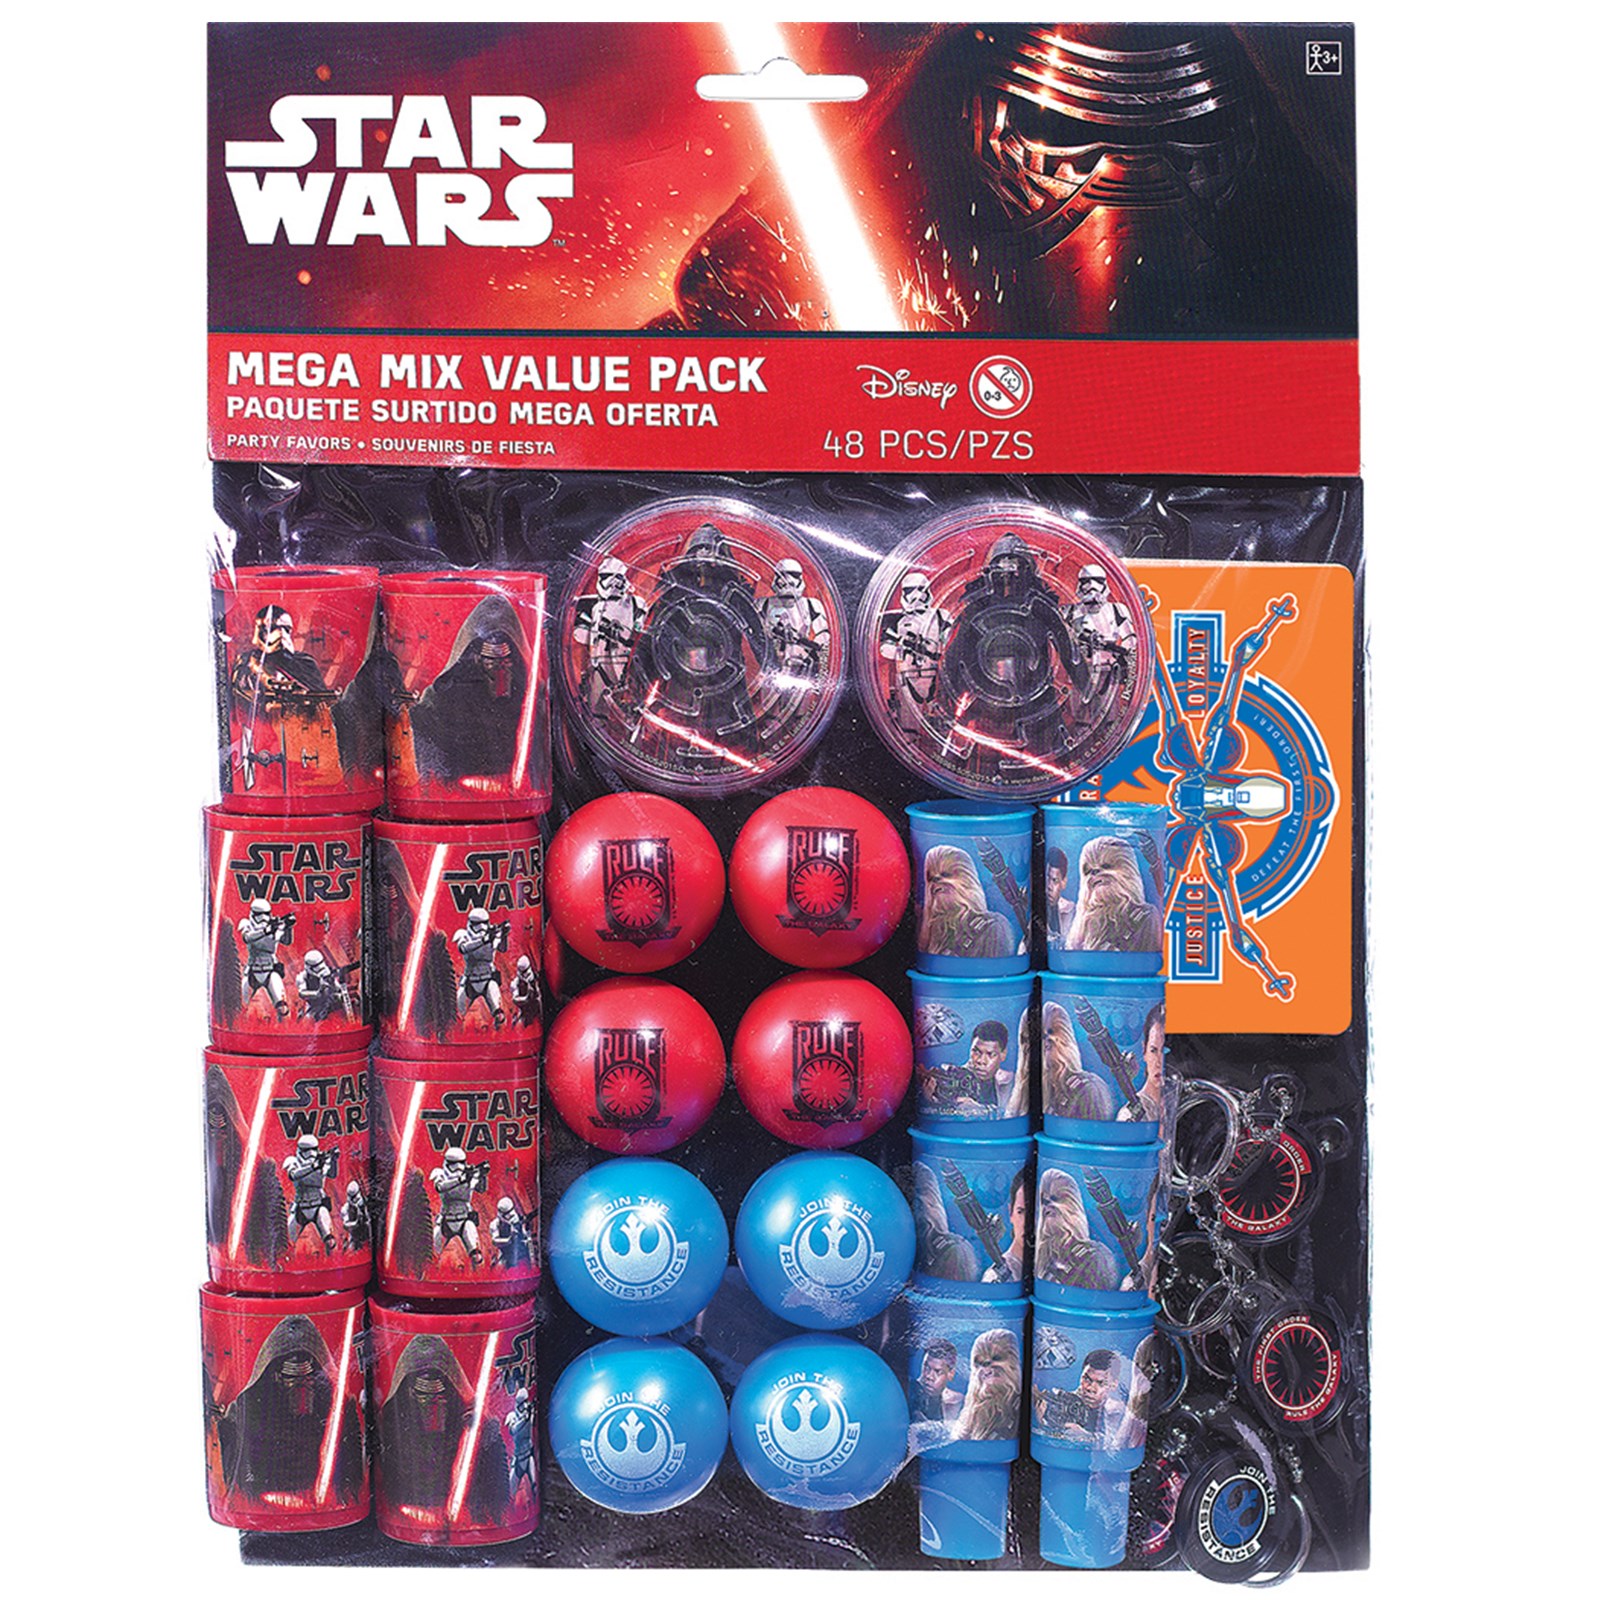 Star Wars 7 Mega Mix Value Pack